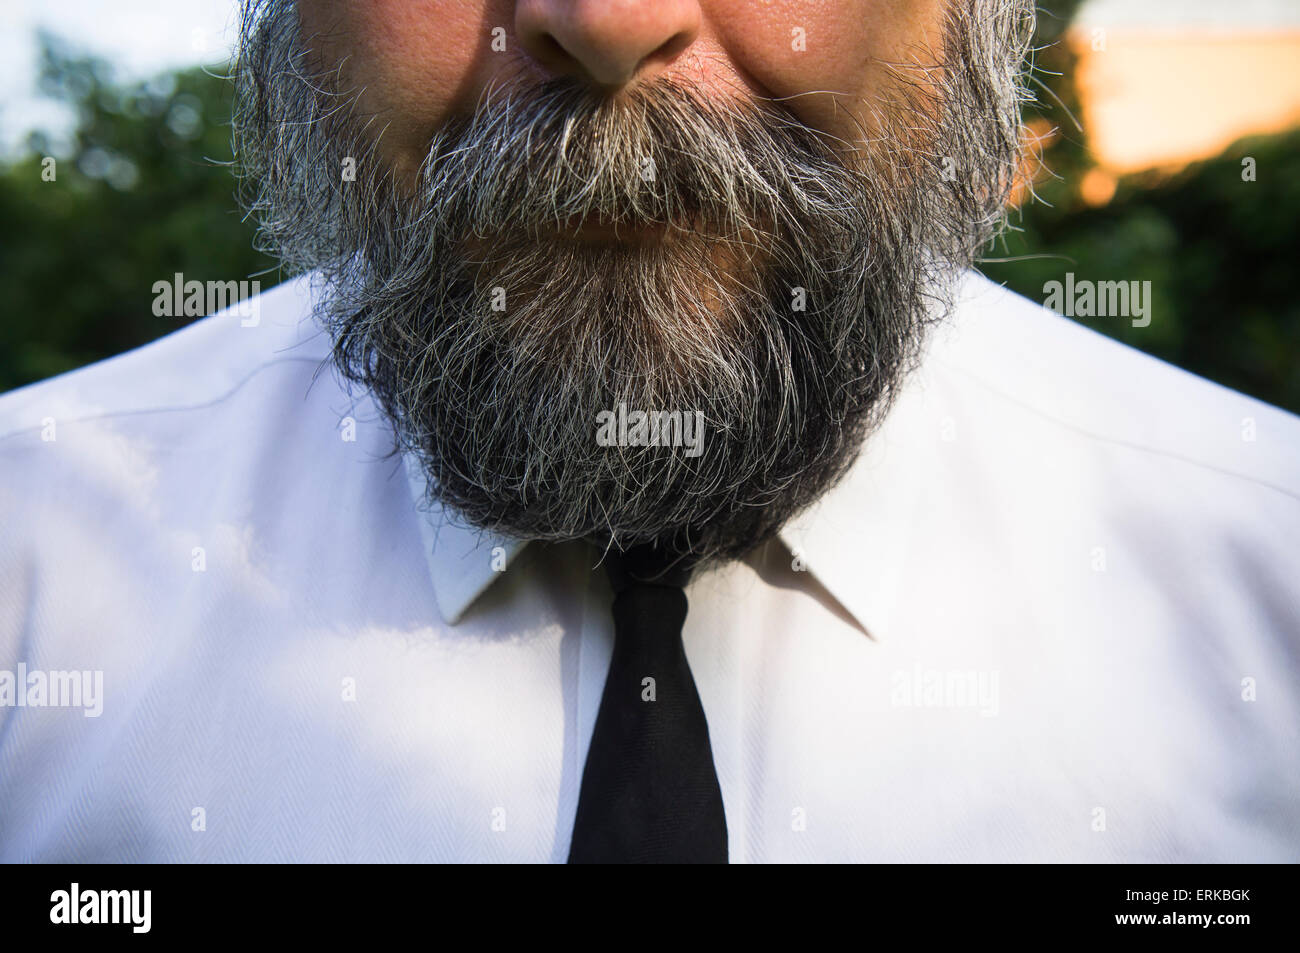 Homme barbu, beard, poivre et sel, couleur noir chemise blanche, cravate  étroite Photo Stock - Alamy